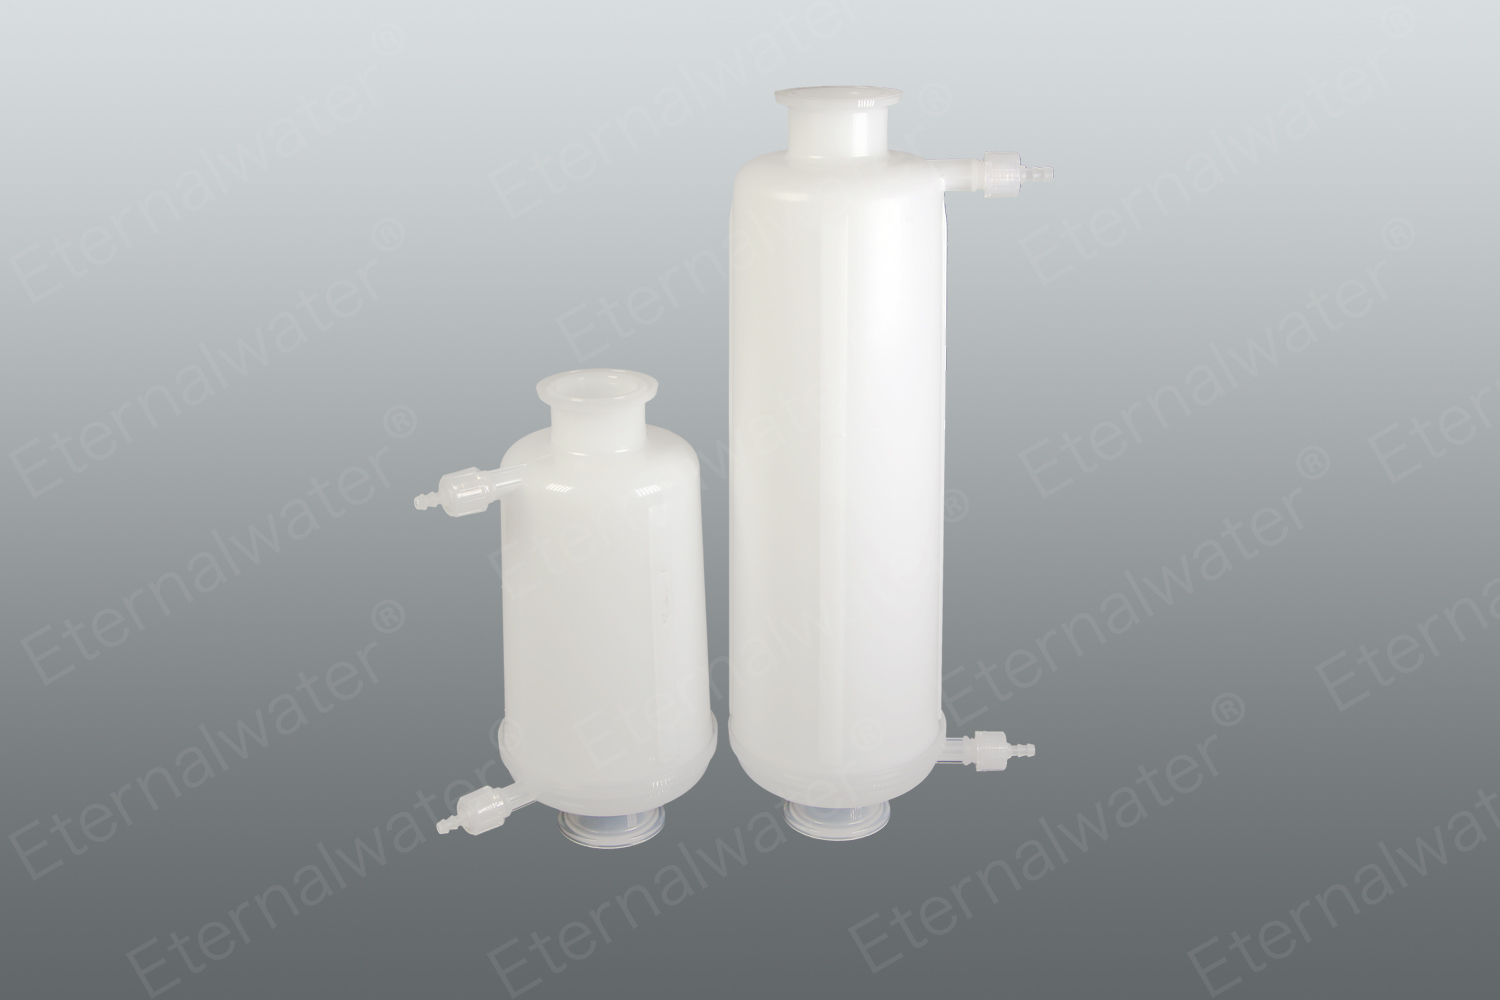 ecs-m series of gamma-resistant hydrophilic capsule filter